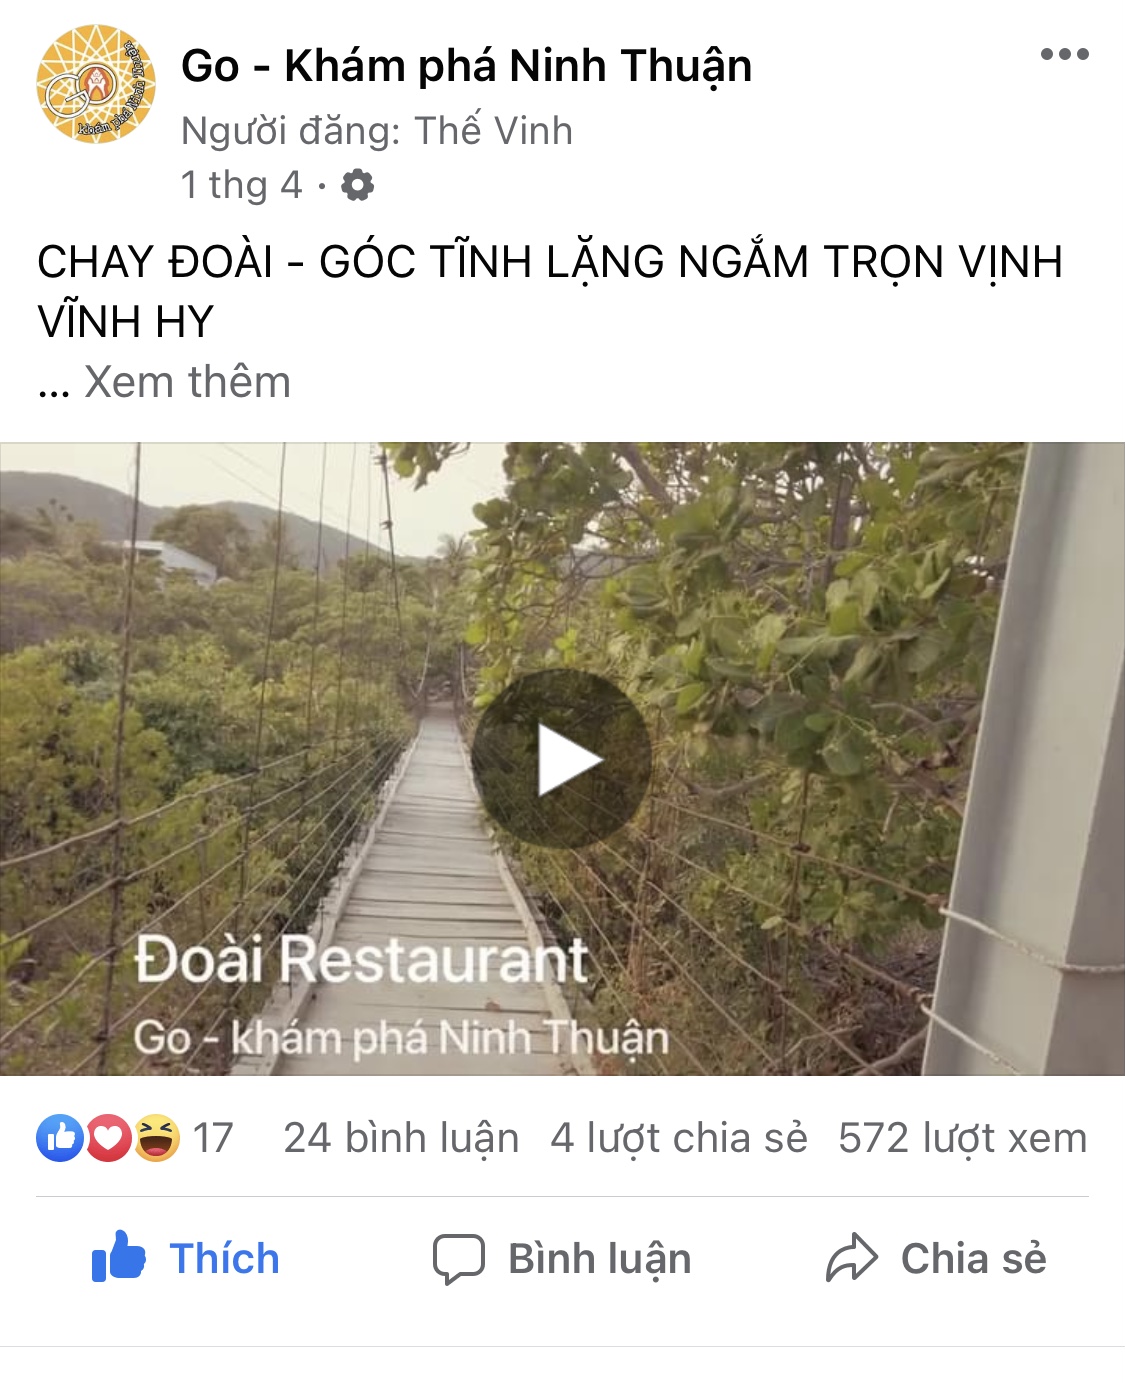 Cổng thông tin du lịch miễn phí Ninh Thuận